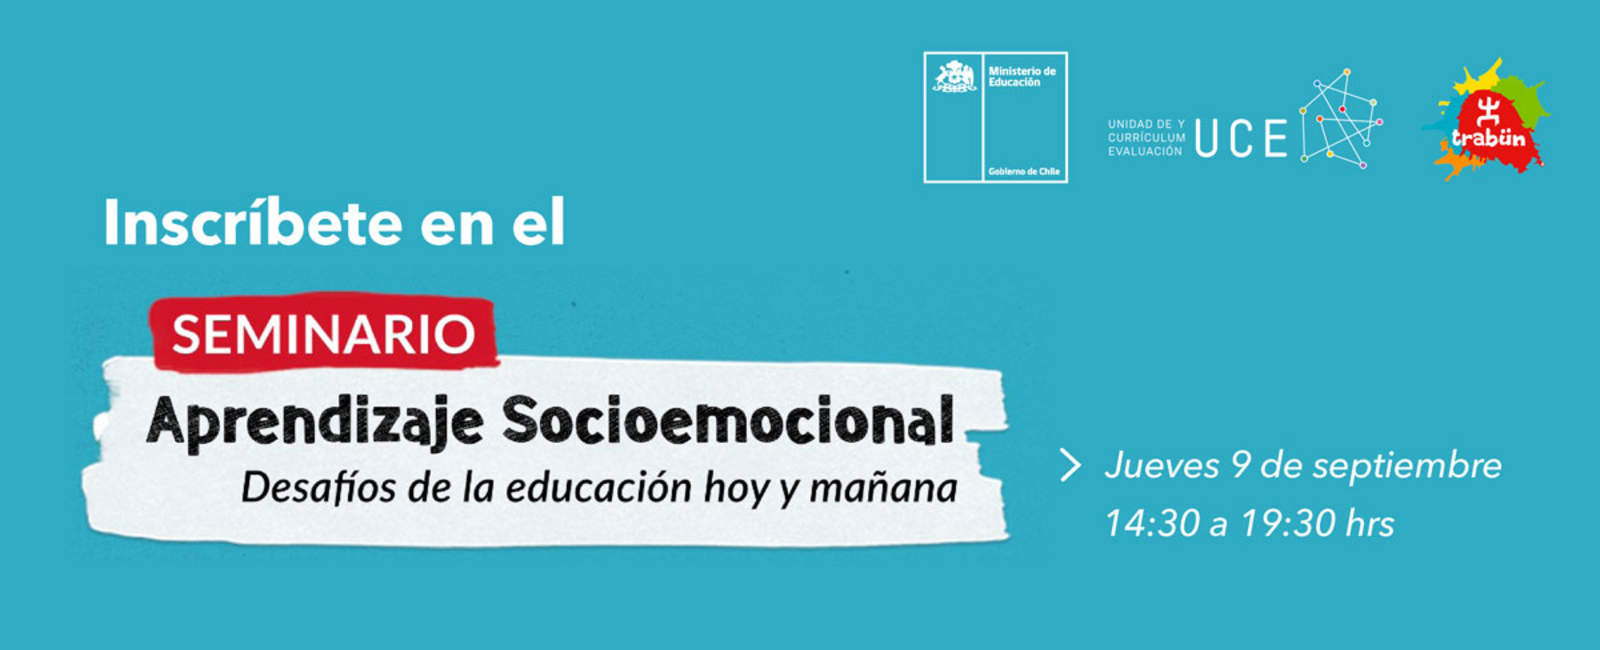 Inscríbete en el Seminario de Aprendizaje Socioemocional: Desafíos de la educación hoy y mañana